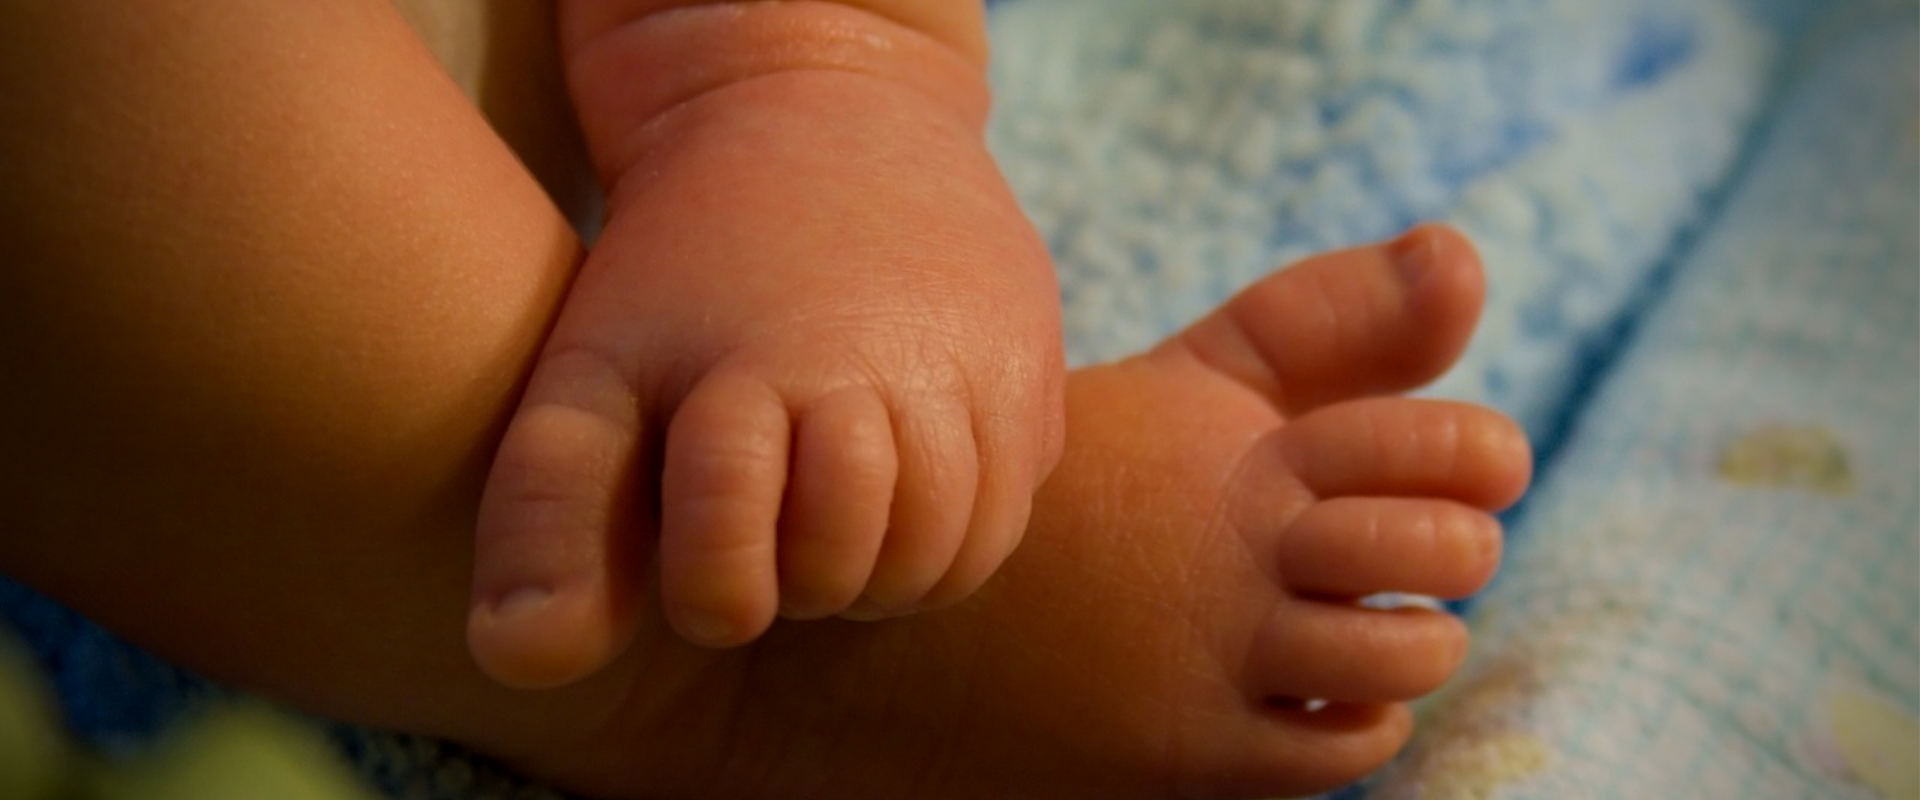 ‘शिशु हत्या’मा सर्वोच्चको नयाँ विधिशास्त्र : लोकलाजका कारण गरिने अपराधमा कम सजाय गर्नू